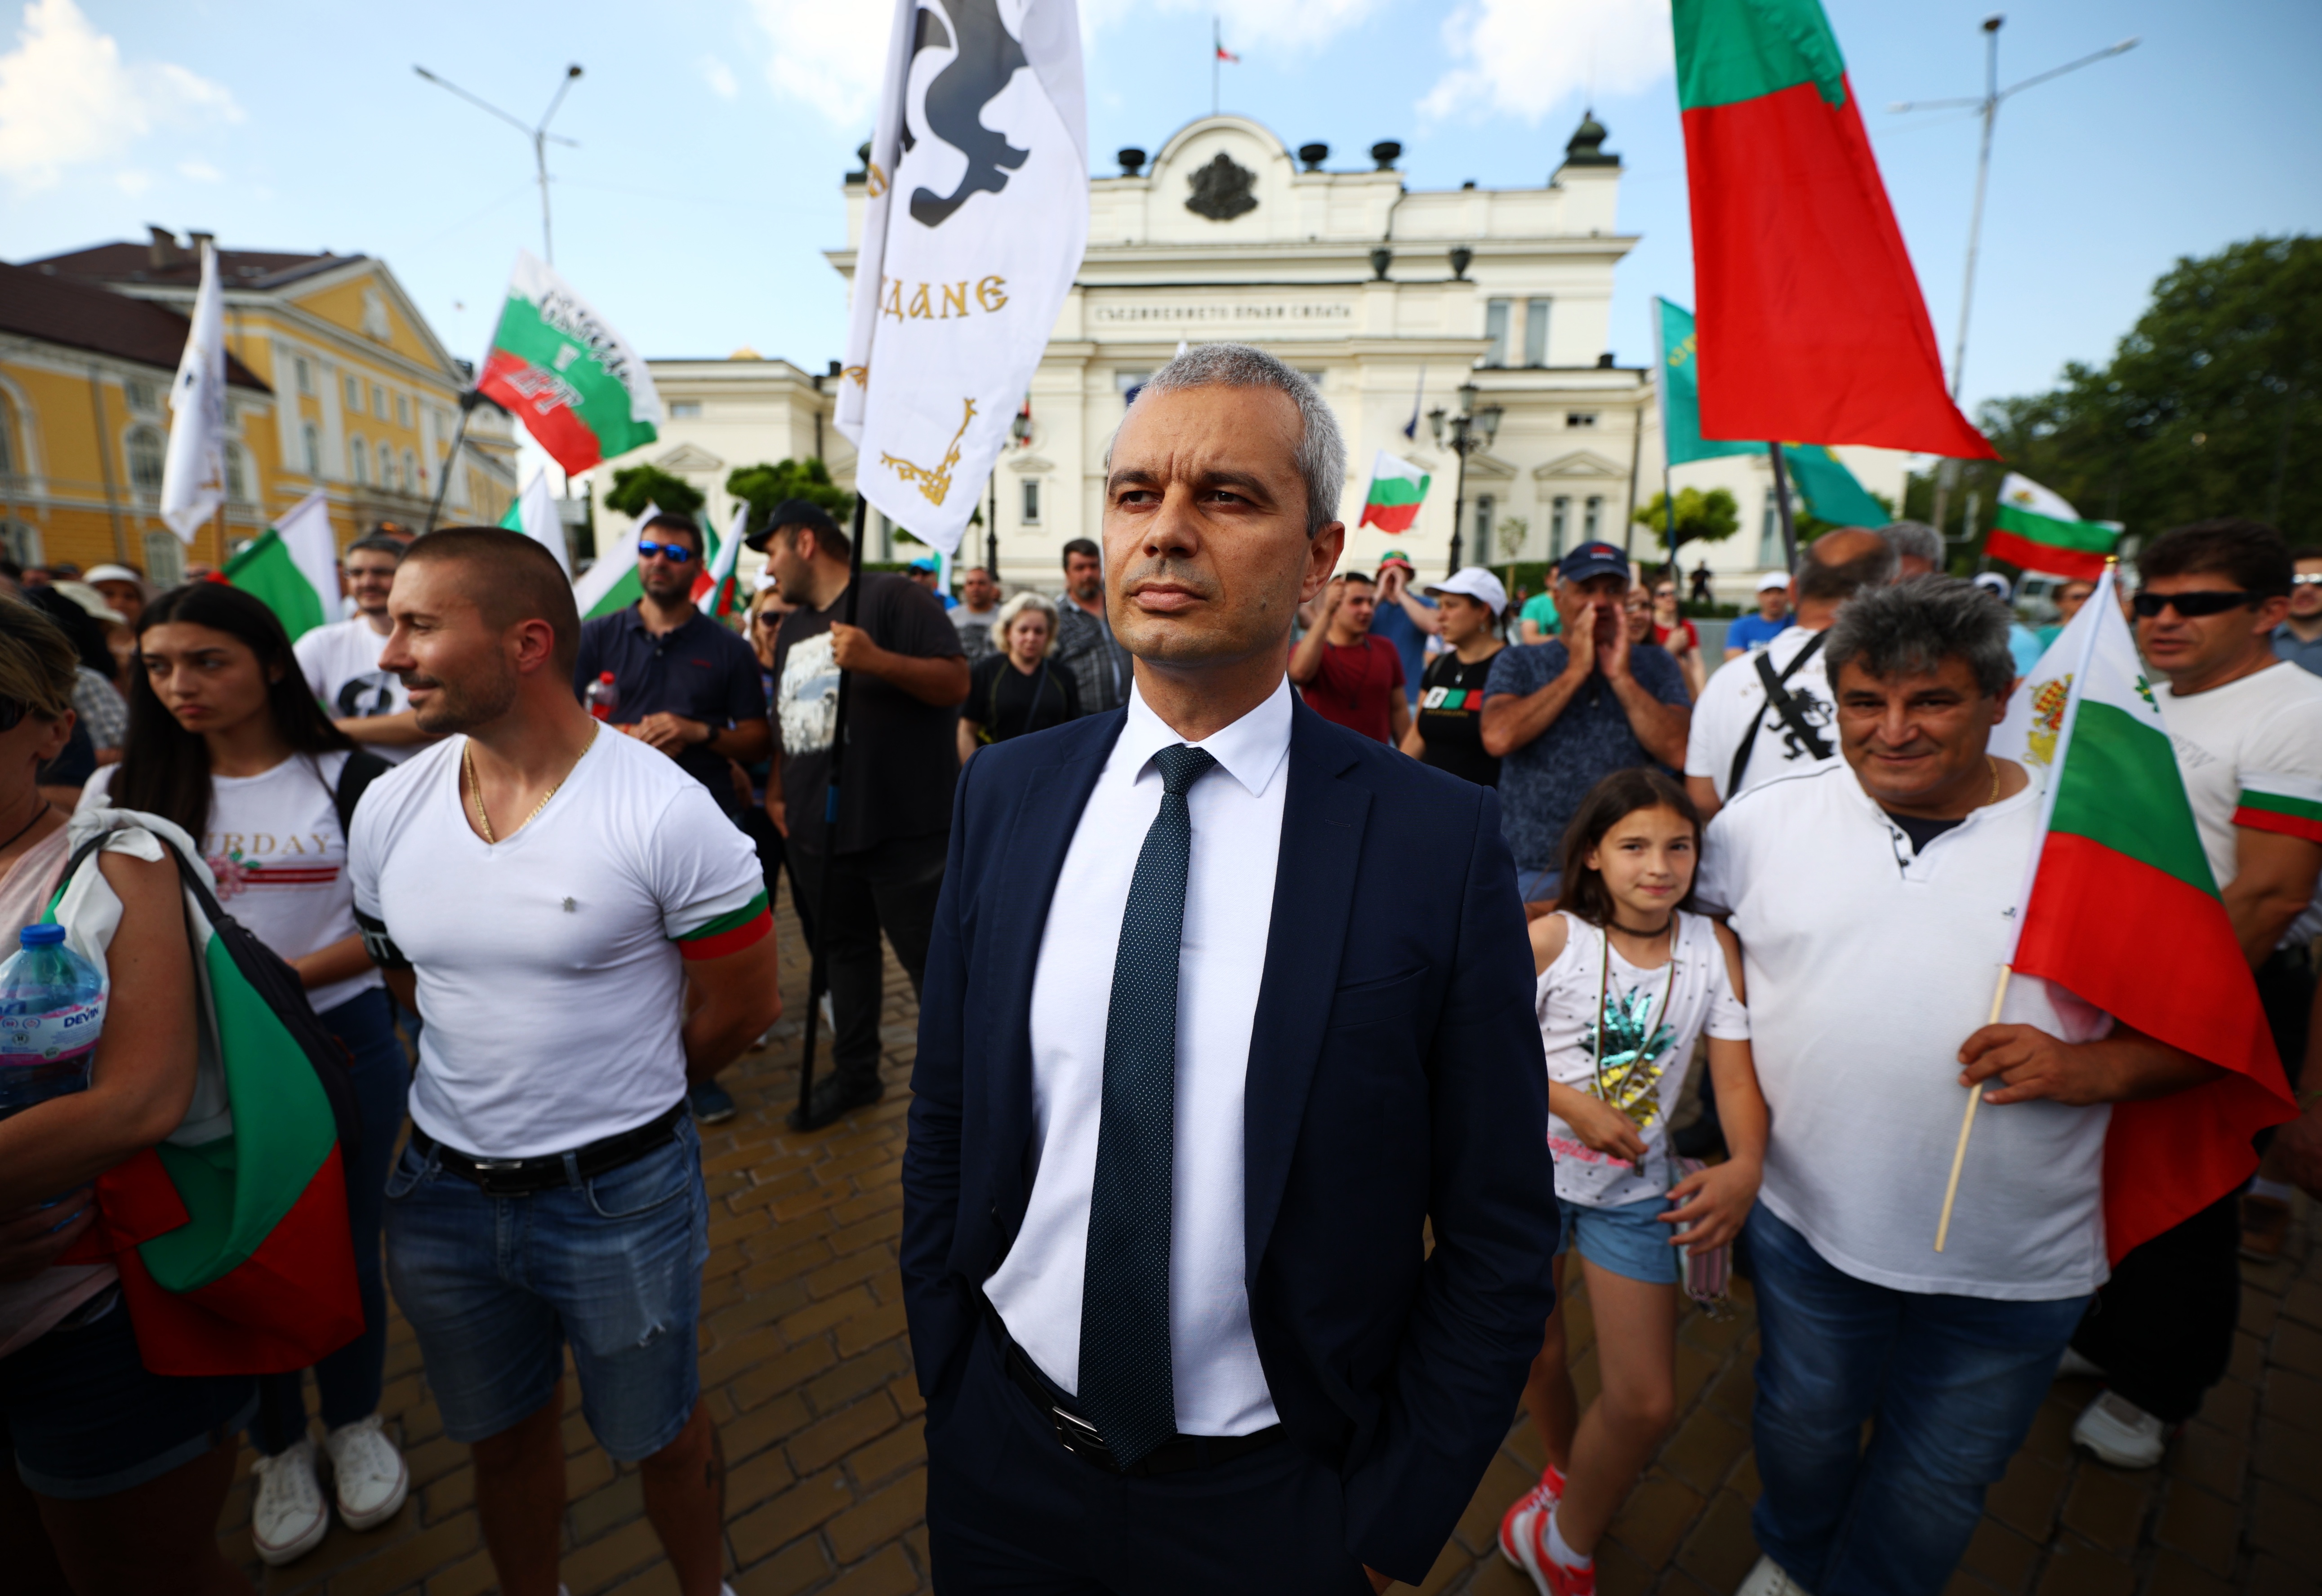 <p>Привърженици на партия &bdquo;Възраждане&ldquo; протестират пред парламента с искане за оставка на правителството. Събралите се скандират &bdquo;Оставка&ldquo;. Издигнат е плакат с надпис: &quot;Историята на България не се продава&quot;. Към протестиращите се присъединиха и депутати от партията</p>